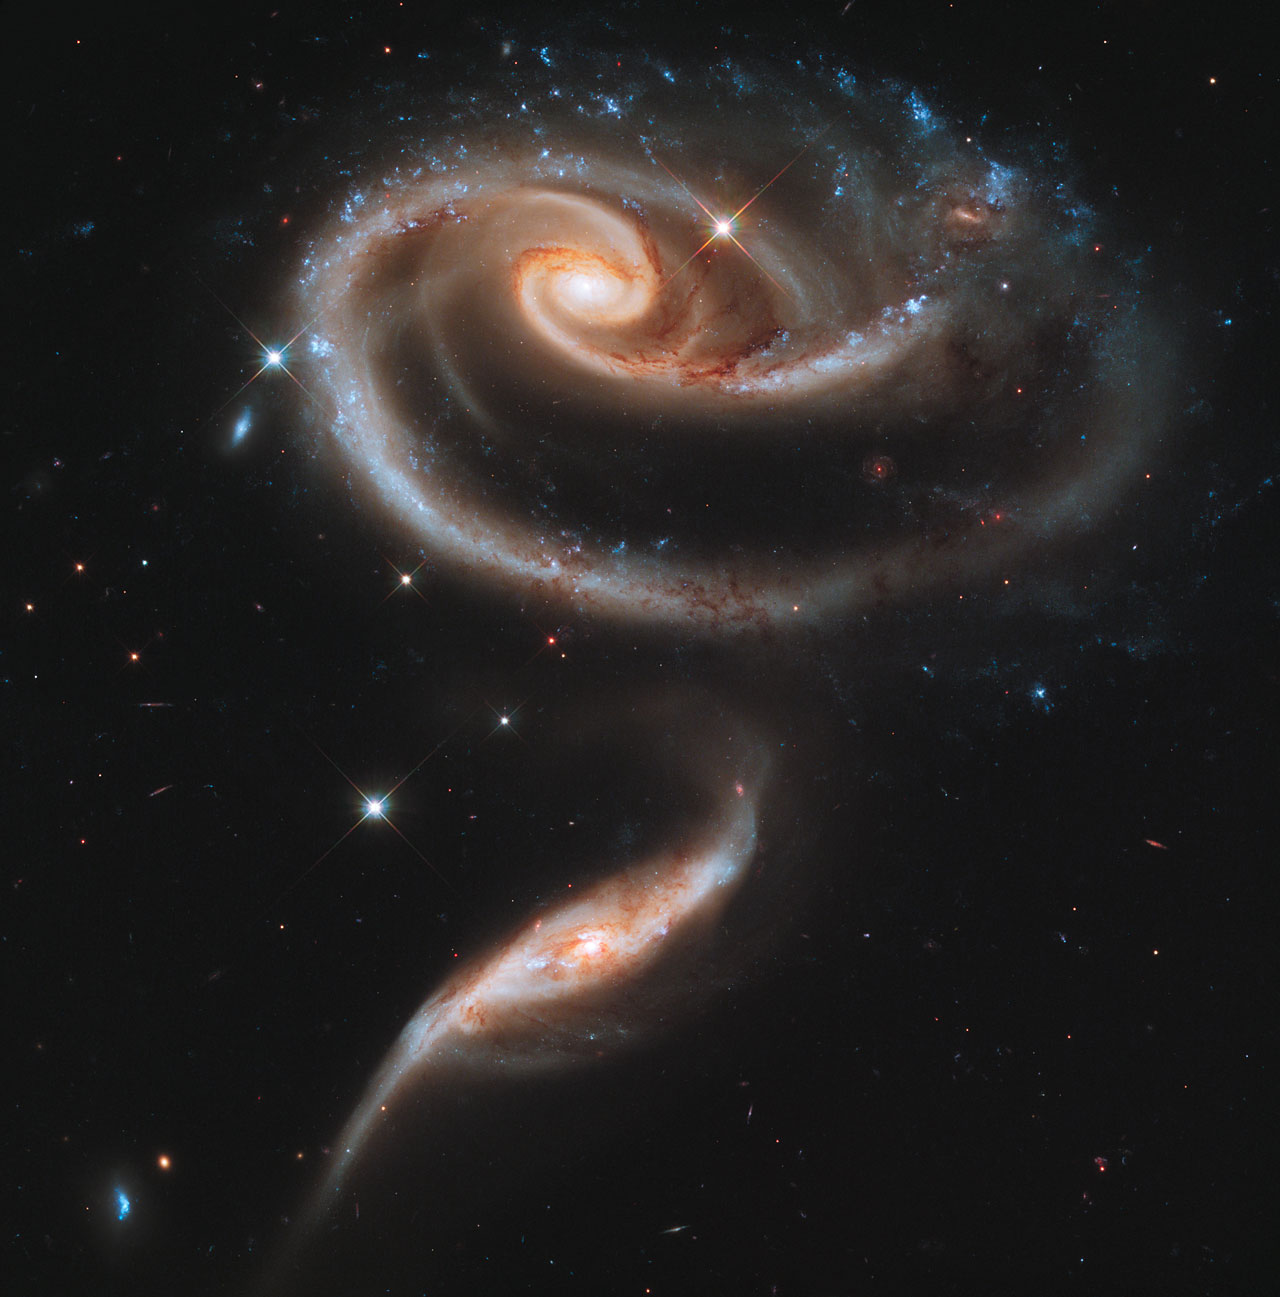 http://d1jqu7g1y74ds1.cloudfront.net/wp-content/uploads/2011/04/Hubble-galactic-rose.jpg